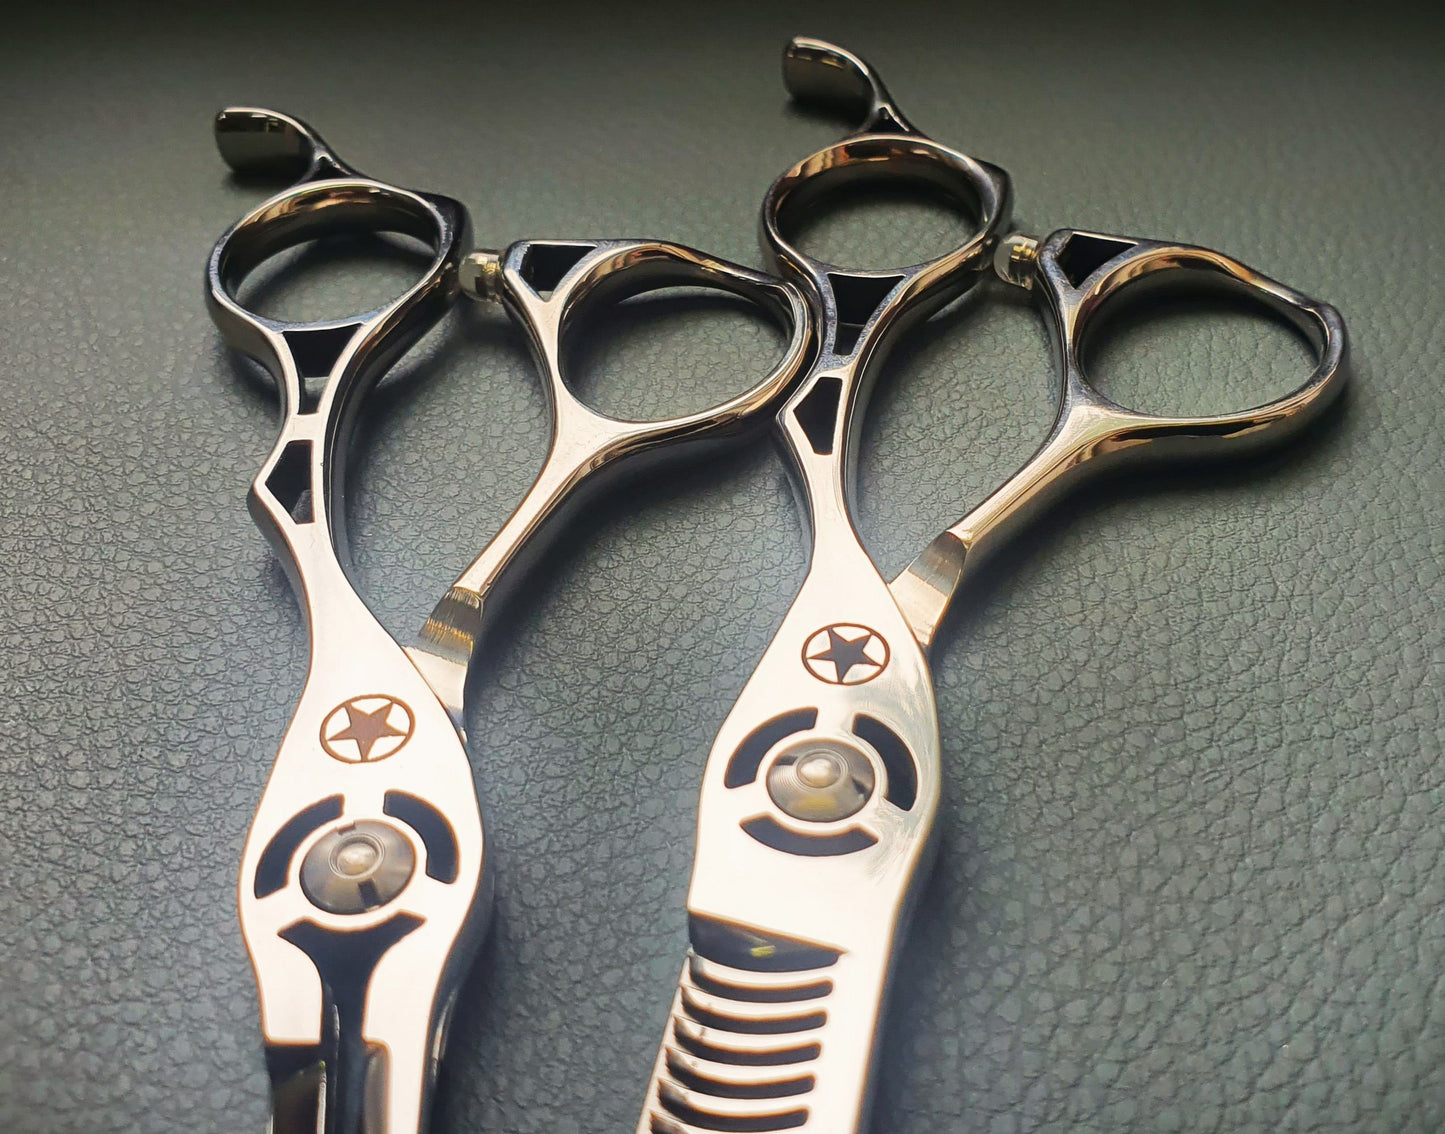 Sternsteiger Centurian Hair Scissors Set 6 Inch